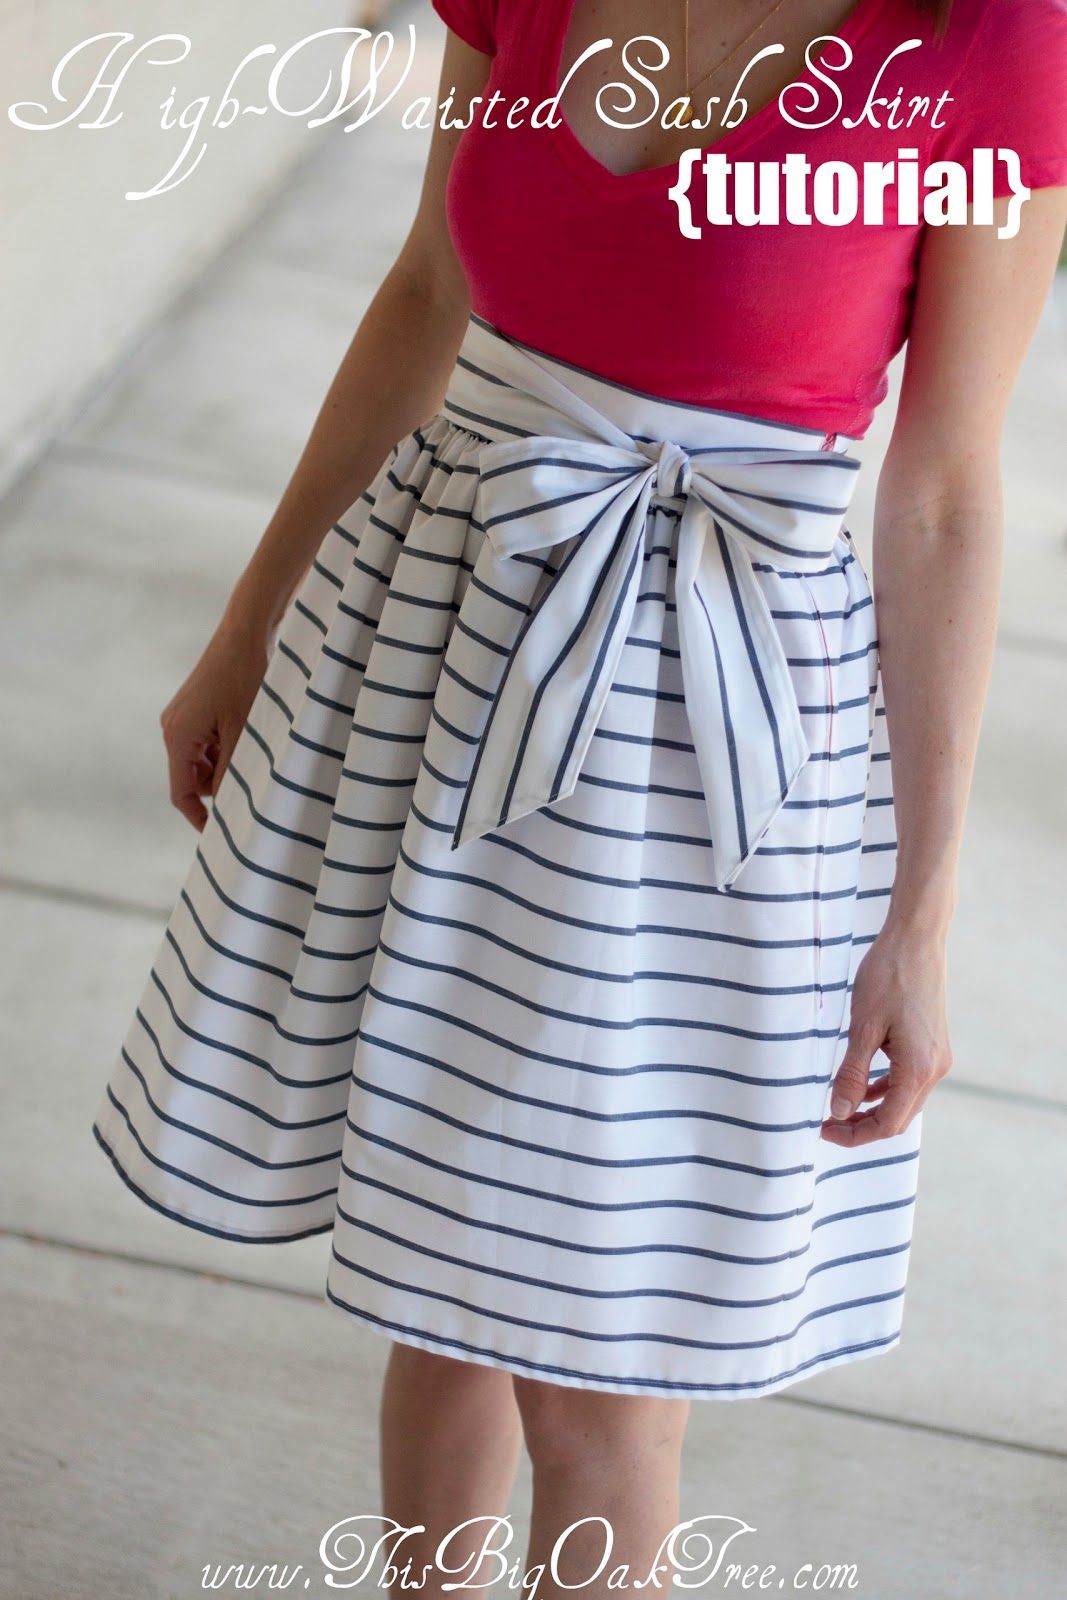 High waisted sash skirt